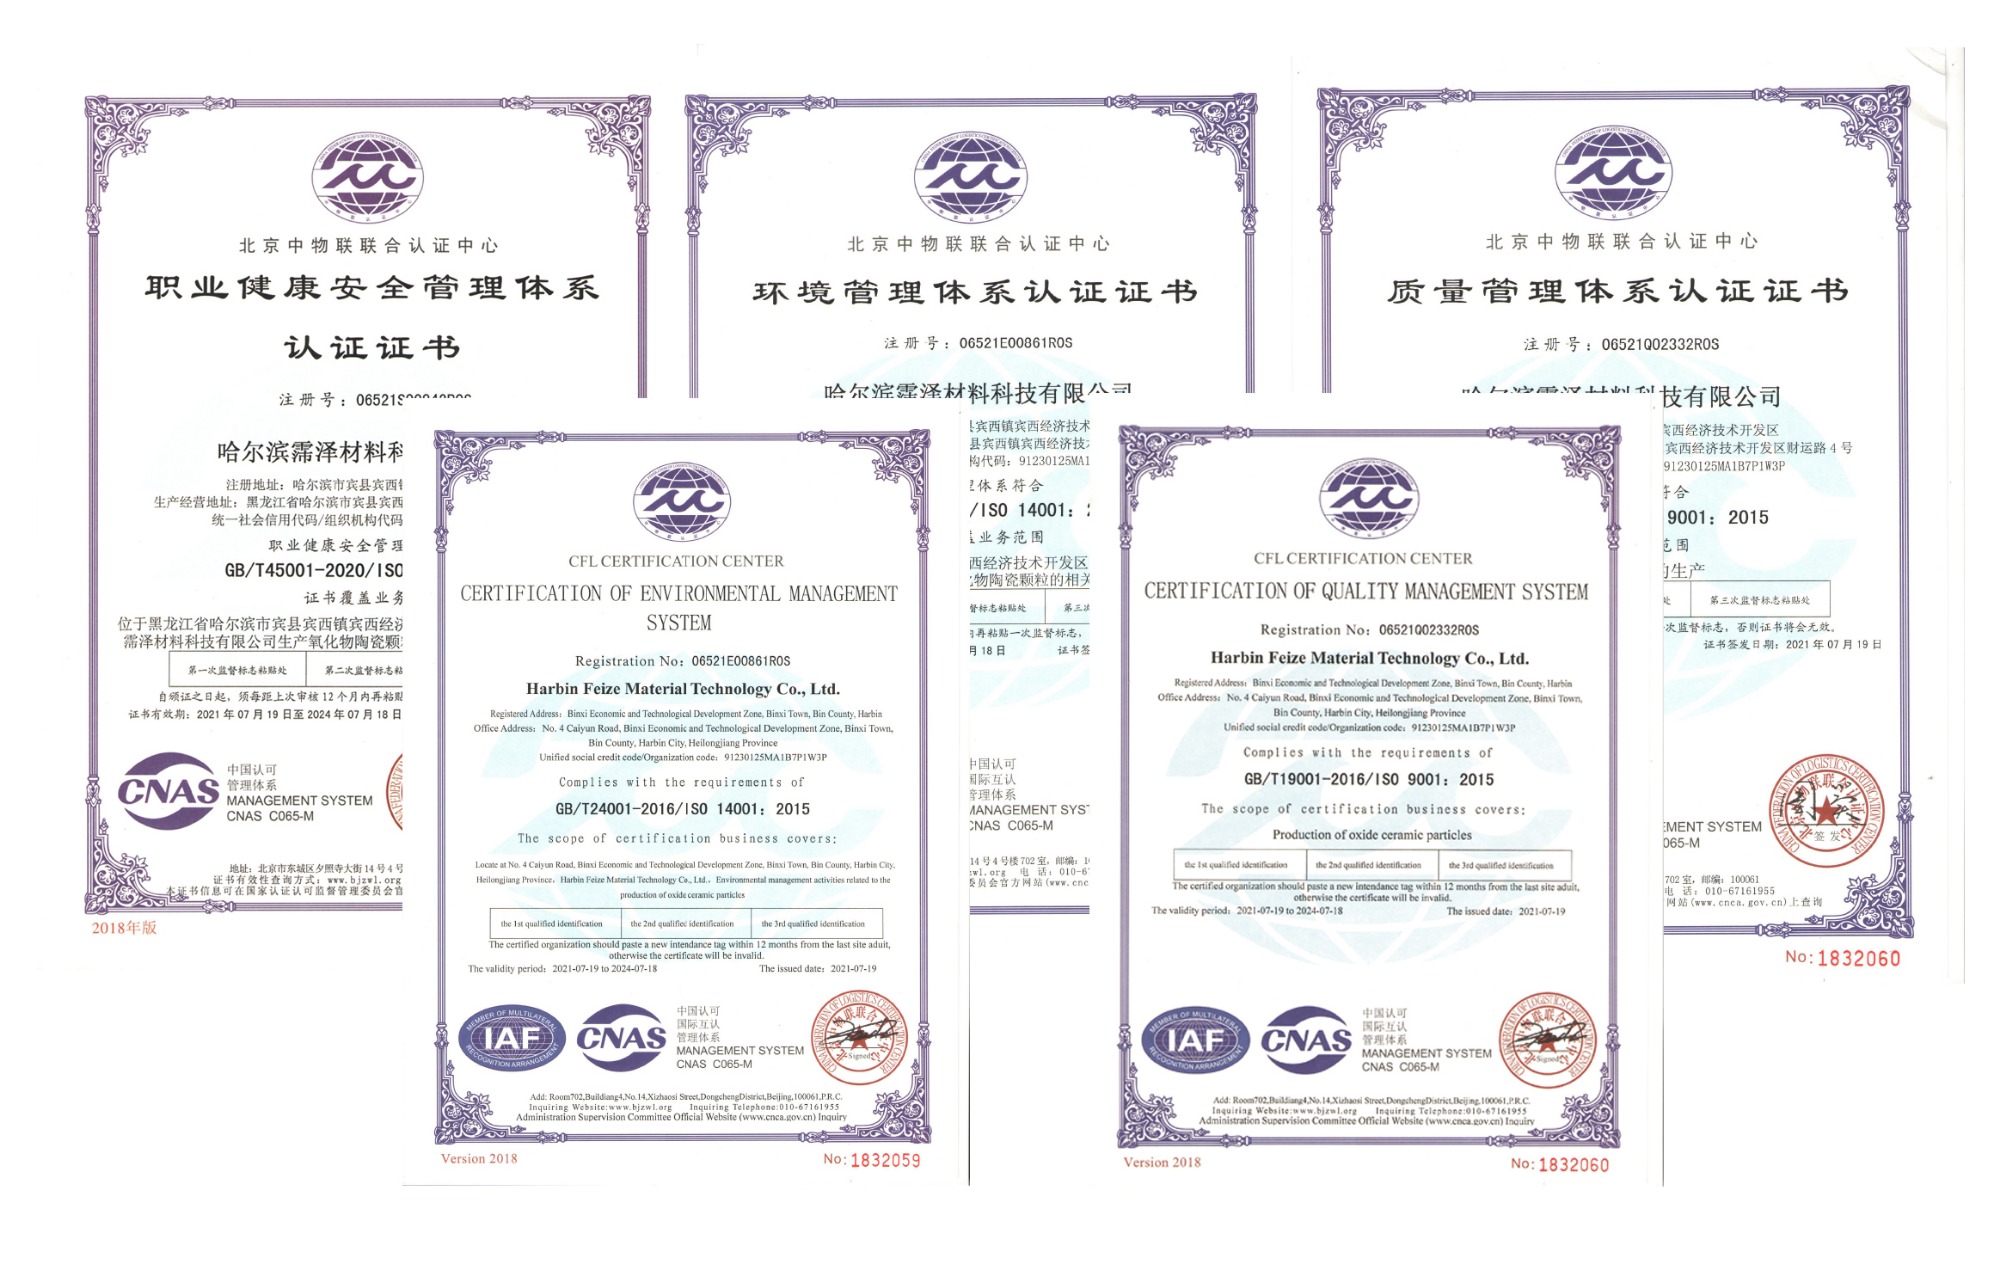 Горячо отмечаем кончину компании Harbin Peize Material Technology Co., Ltd. [Сертификация всех систем IOS]